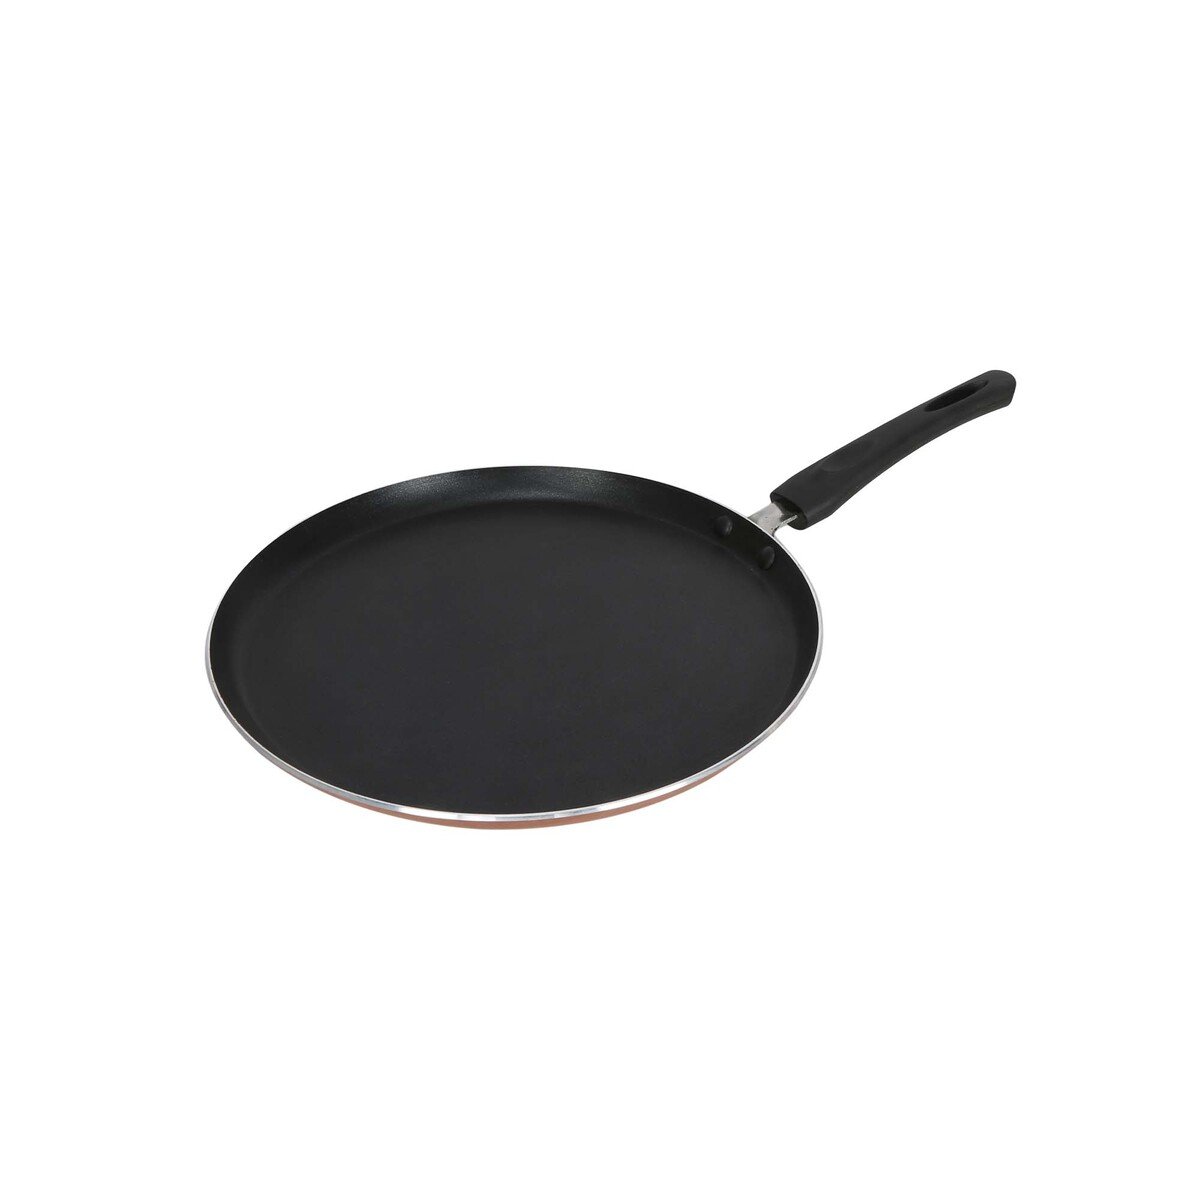 Chefline Non-Stick Aluminium Crepe Pan, 30 cm, IND